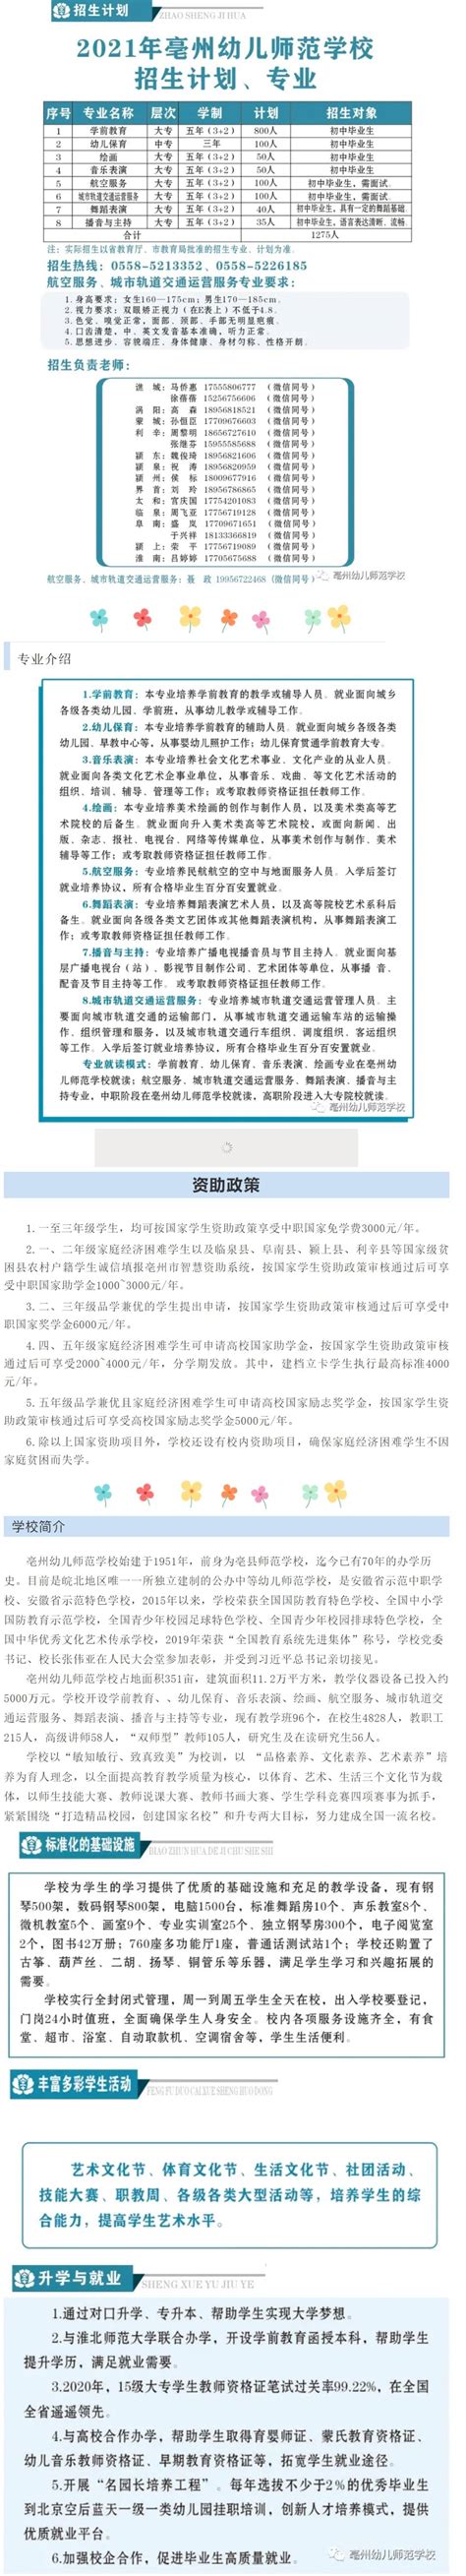 亳州幼儿师范学校2021年招生简章 - 职教网